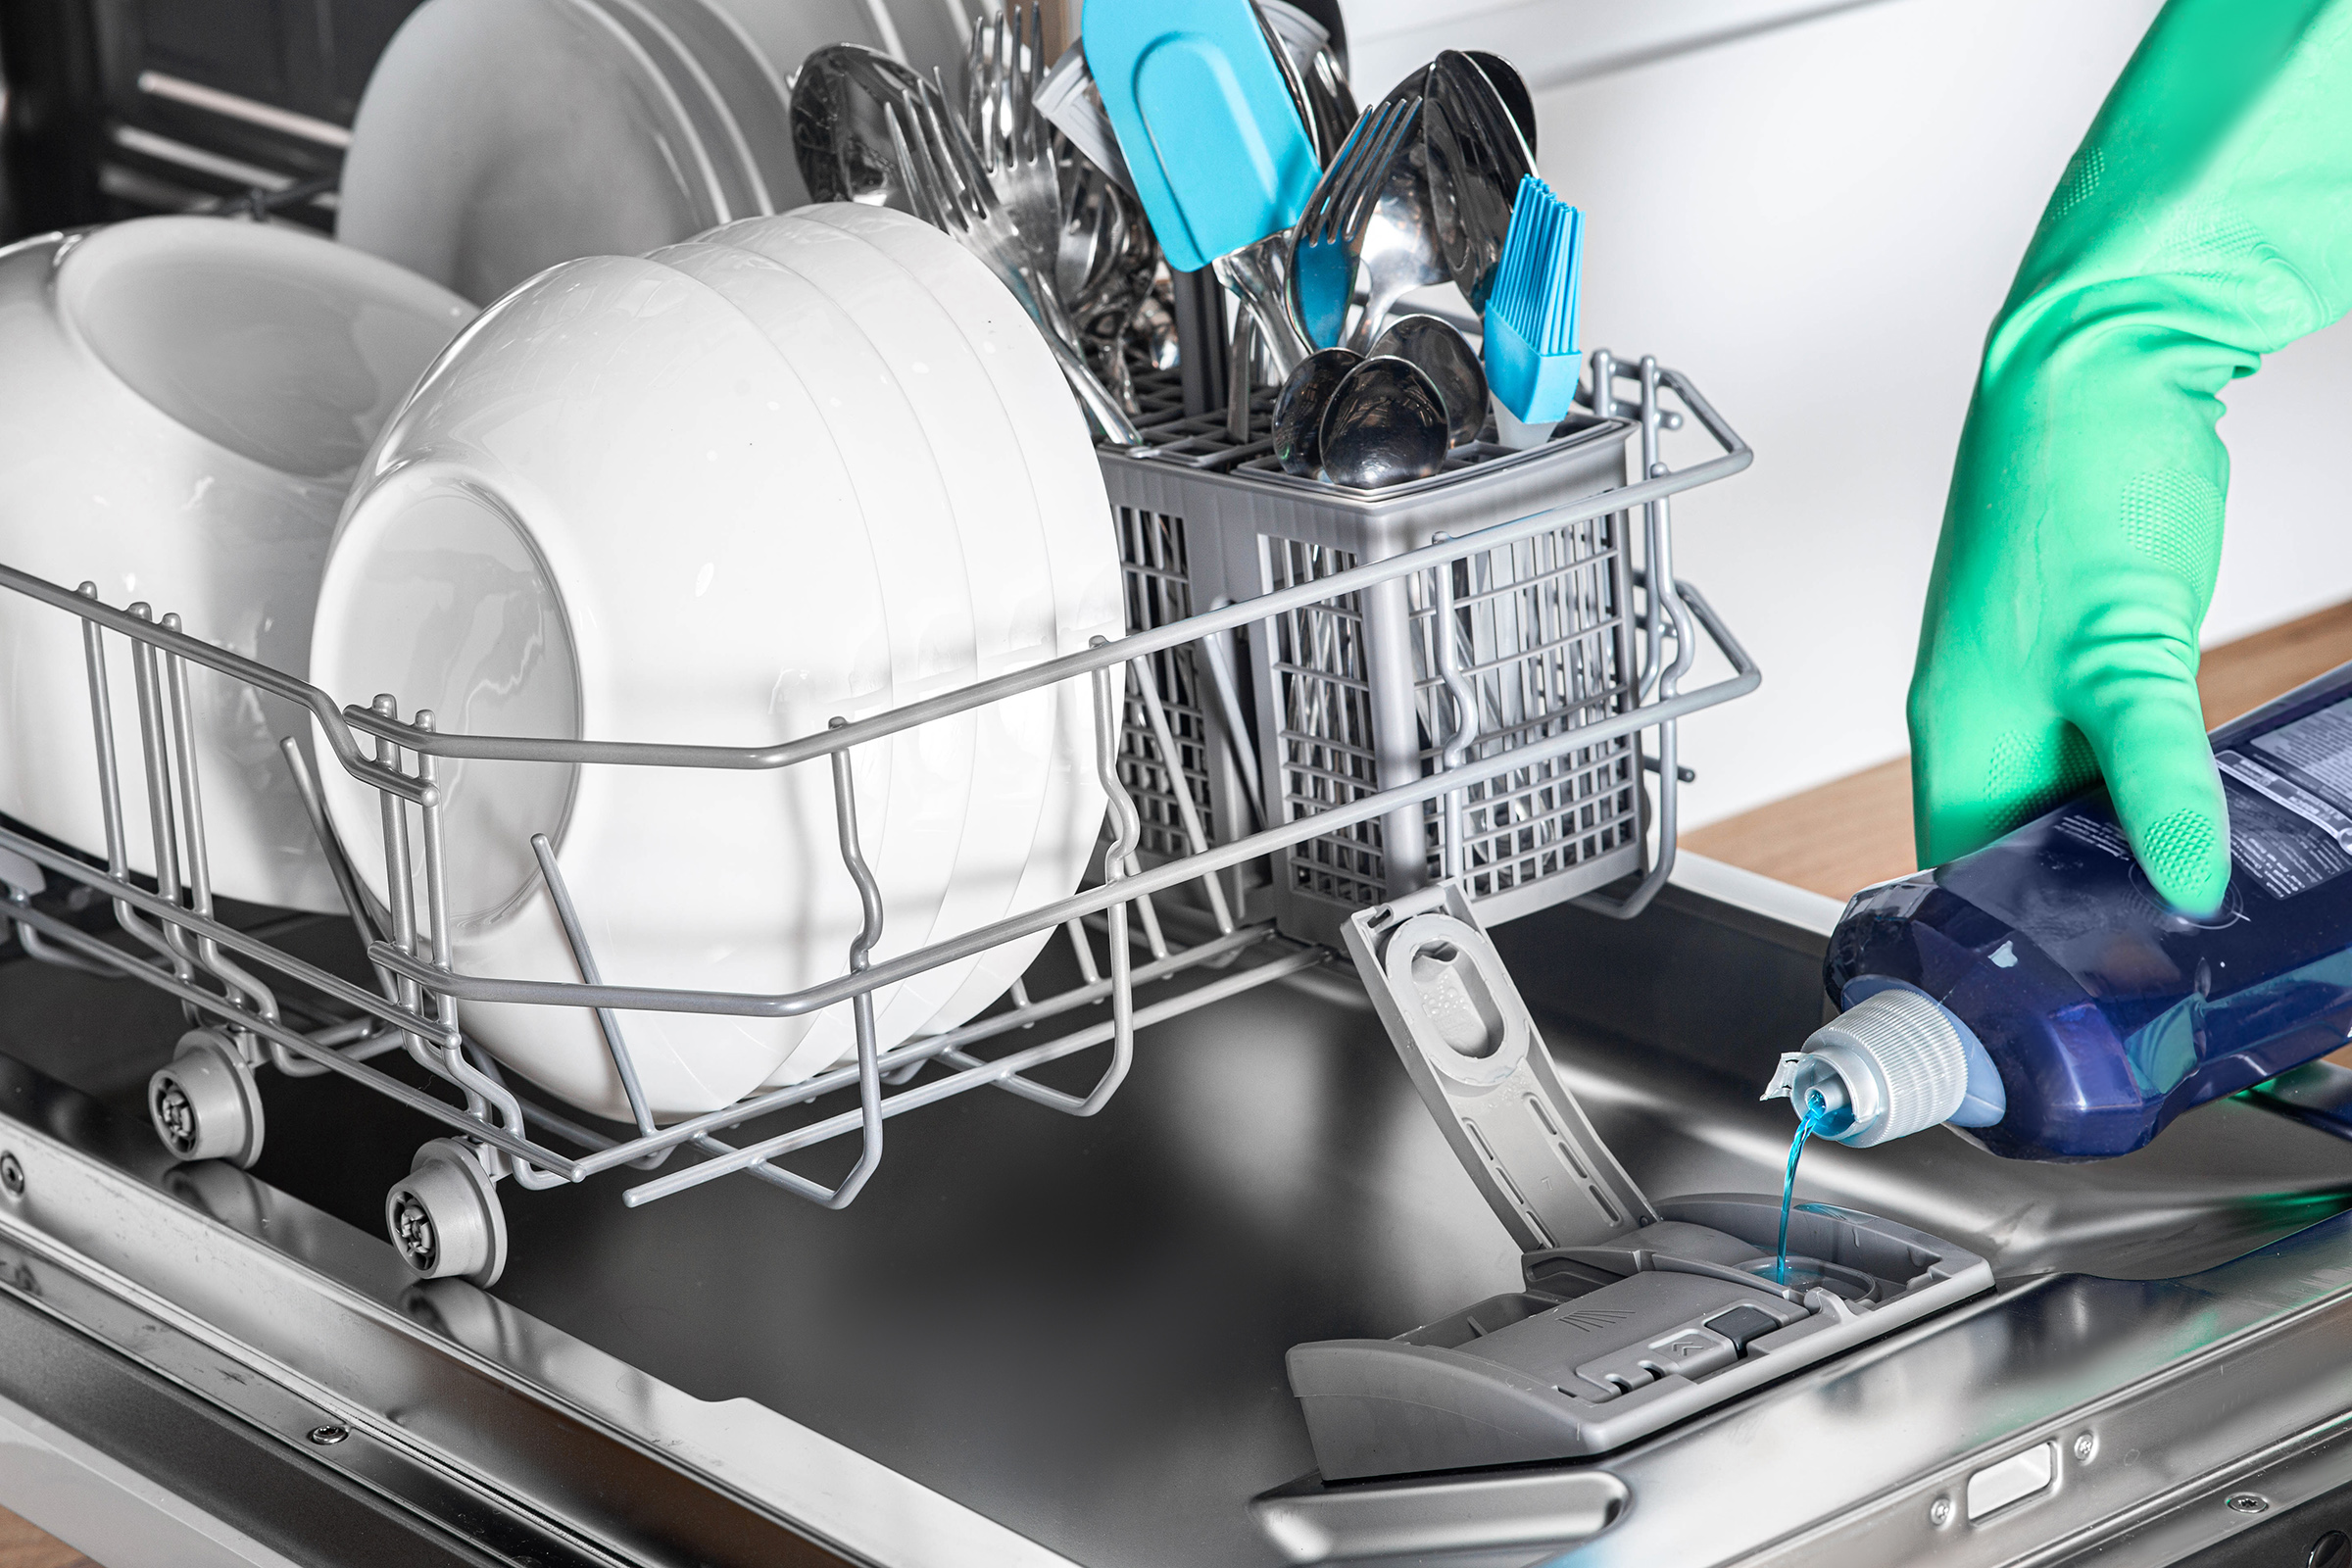 Сковородка можно мыть в посудомойке. Rinse Aid for Bosch Dishwasher. Средства для ополаскивания посудомоечной машины Майнфелд. Мойка с ополаскивателем для стаканов. Посуда моющие машина с фоном.